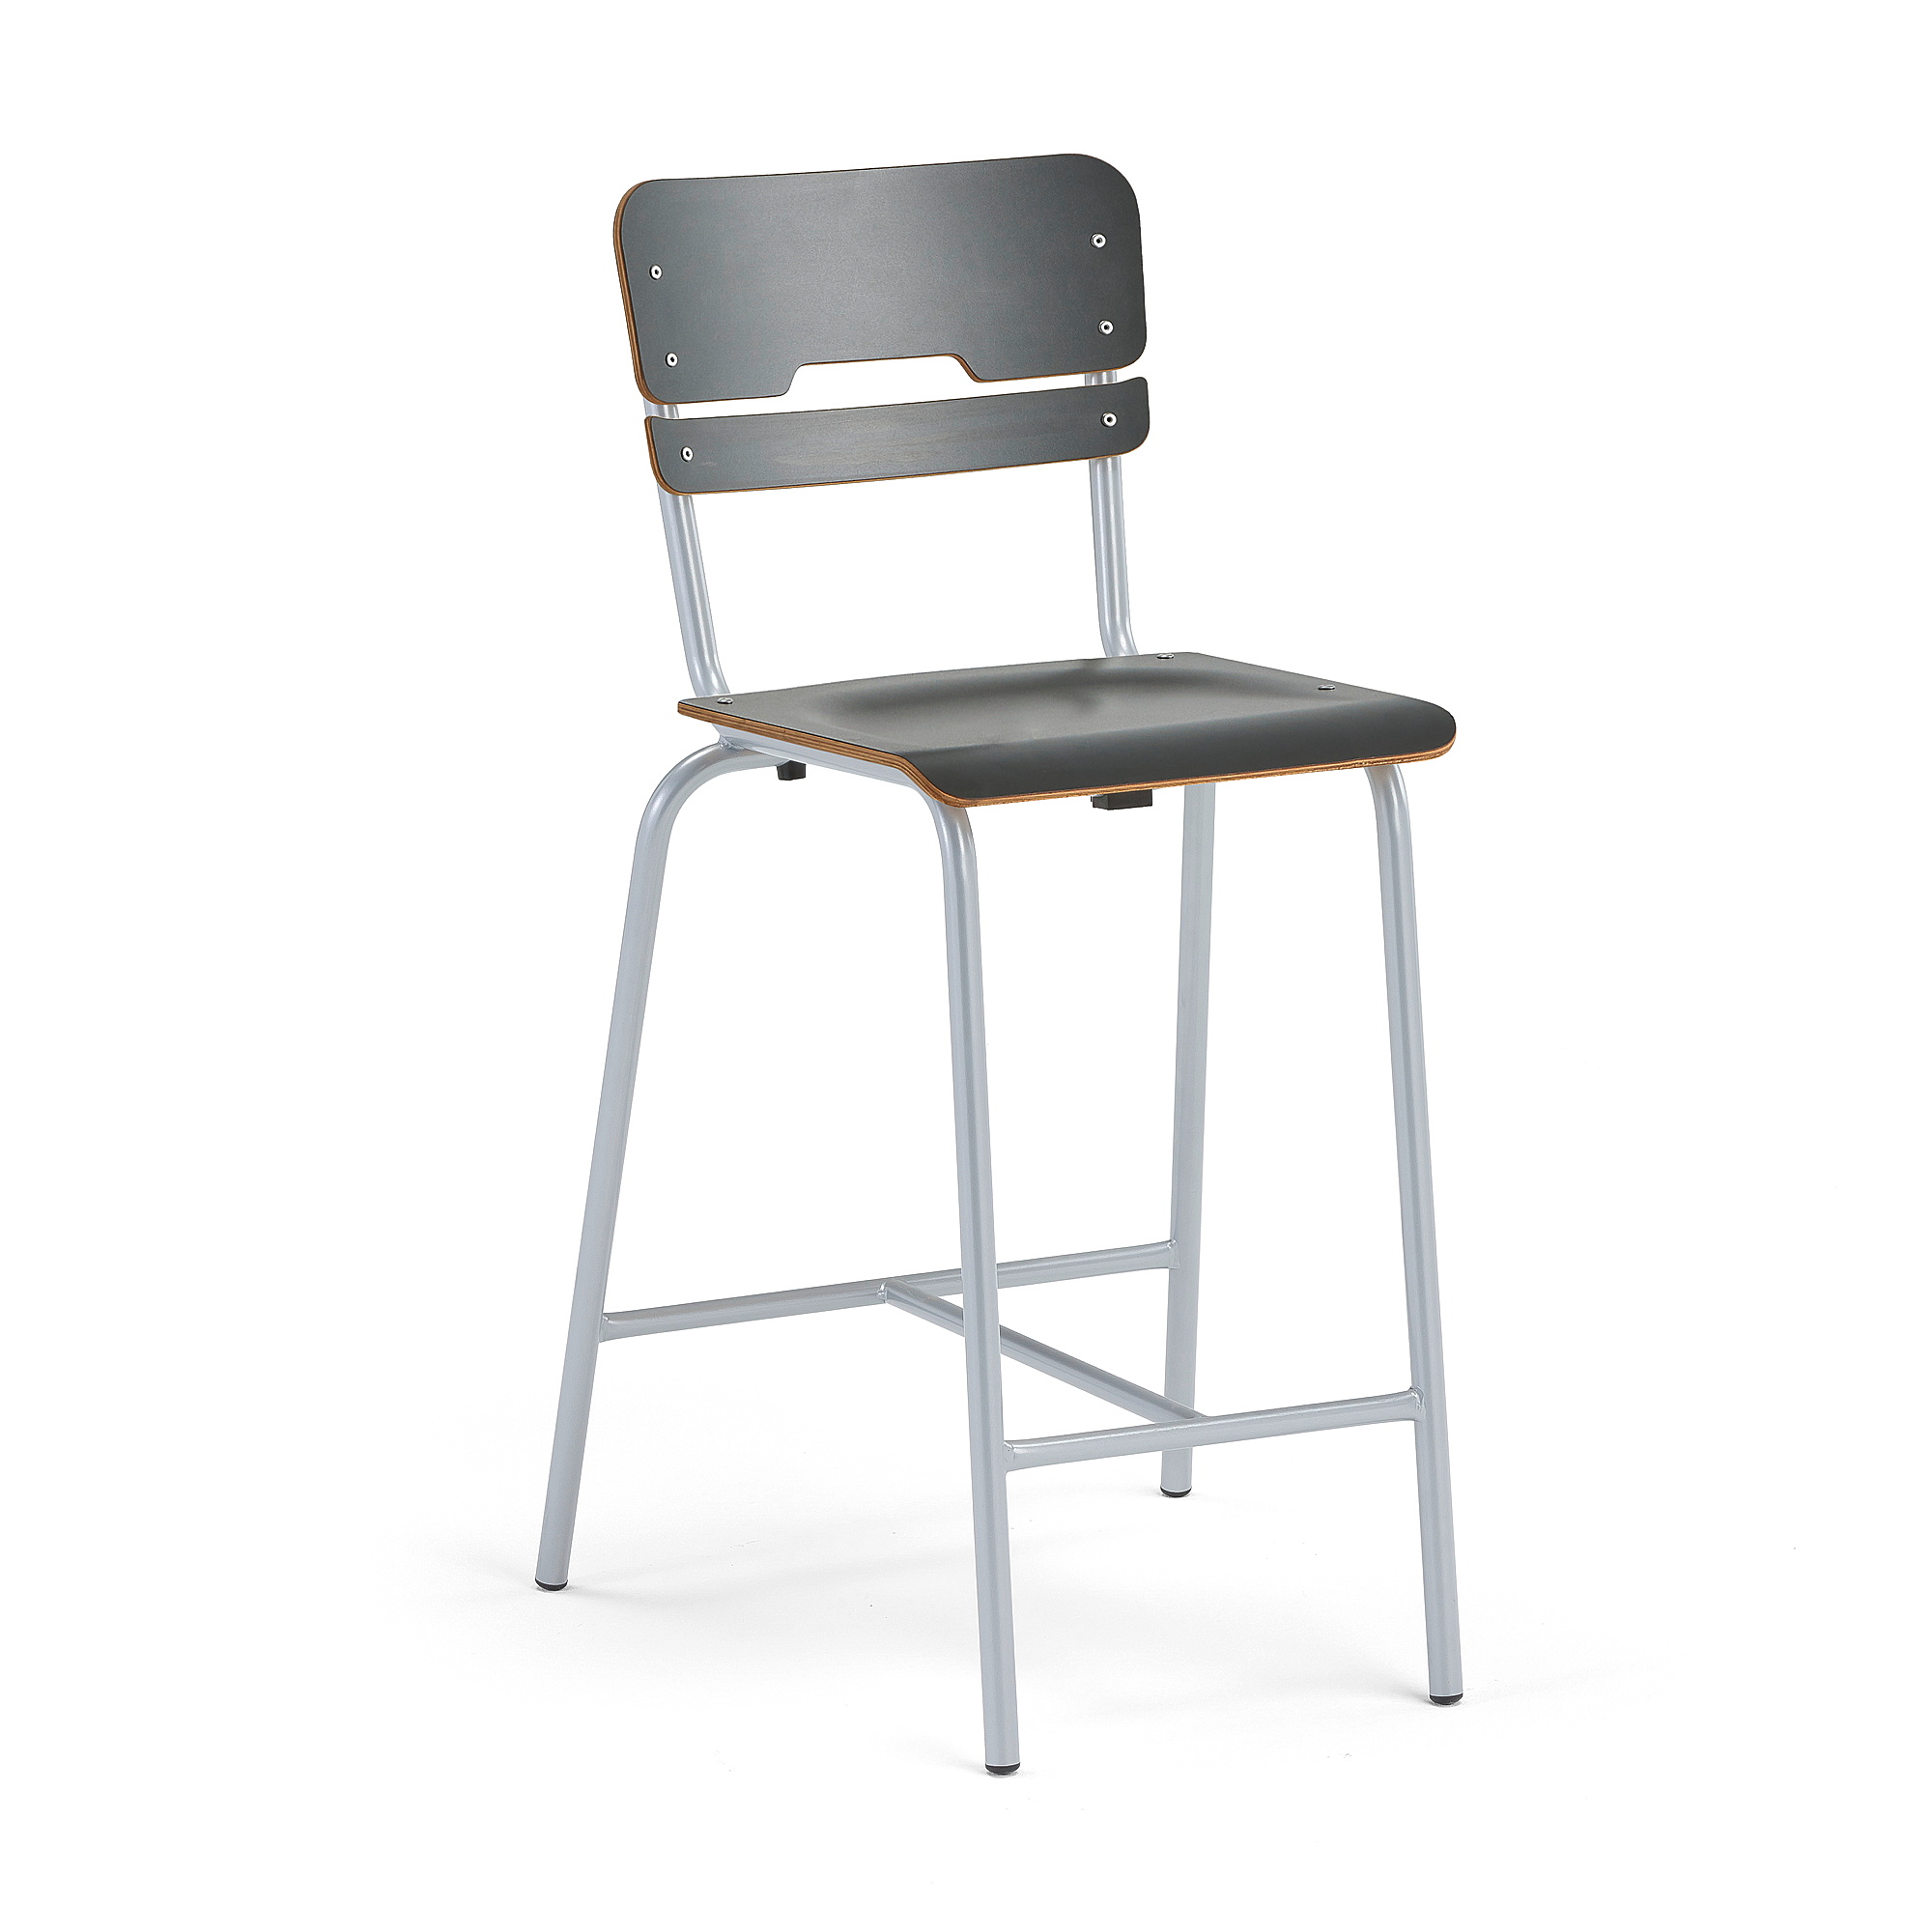 Školní židle SCIENTIA, sedák 390x390 mm, výška 650 mm, stříbrná/antracitová